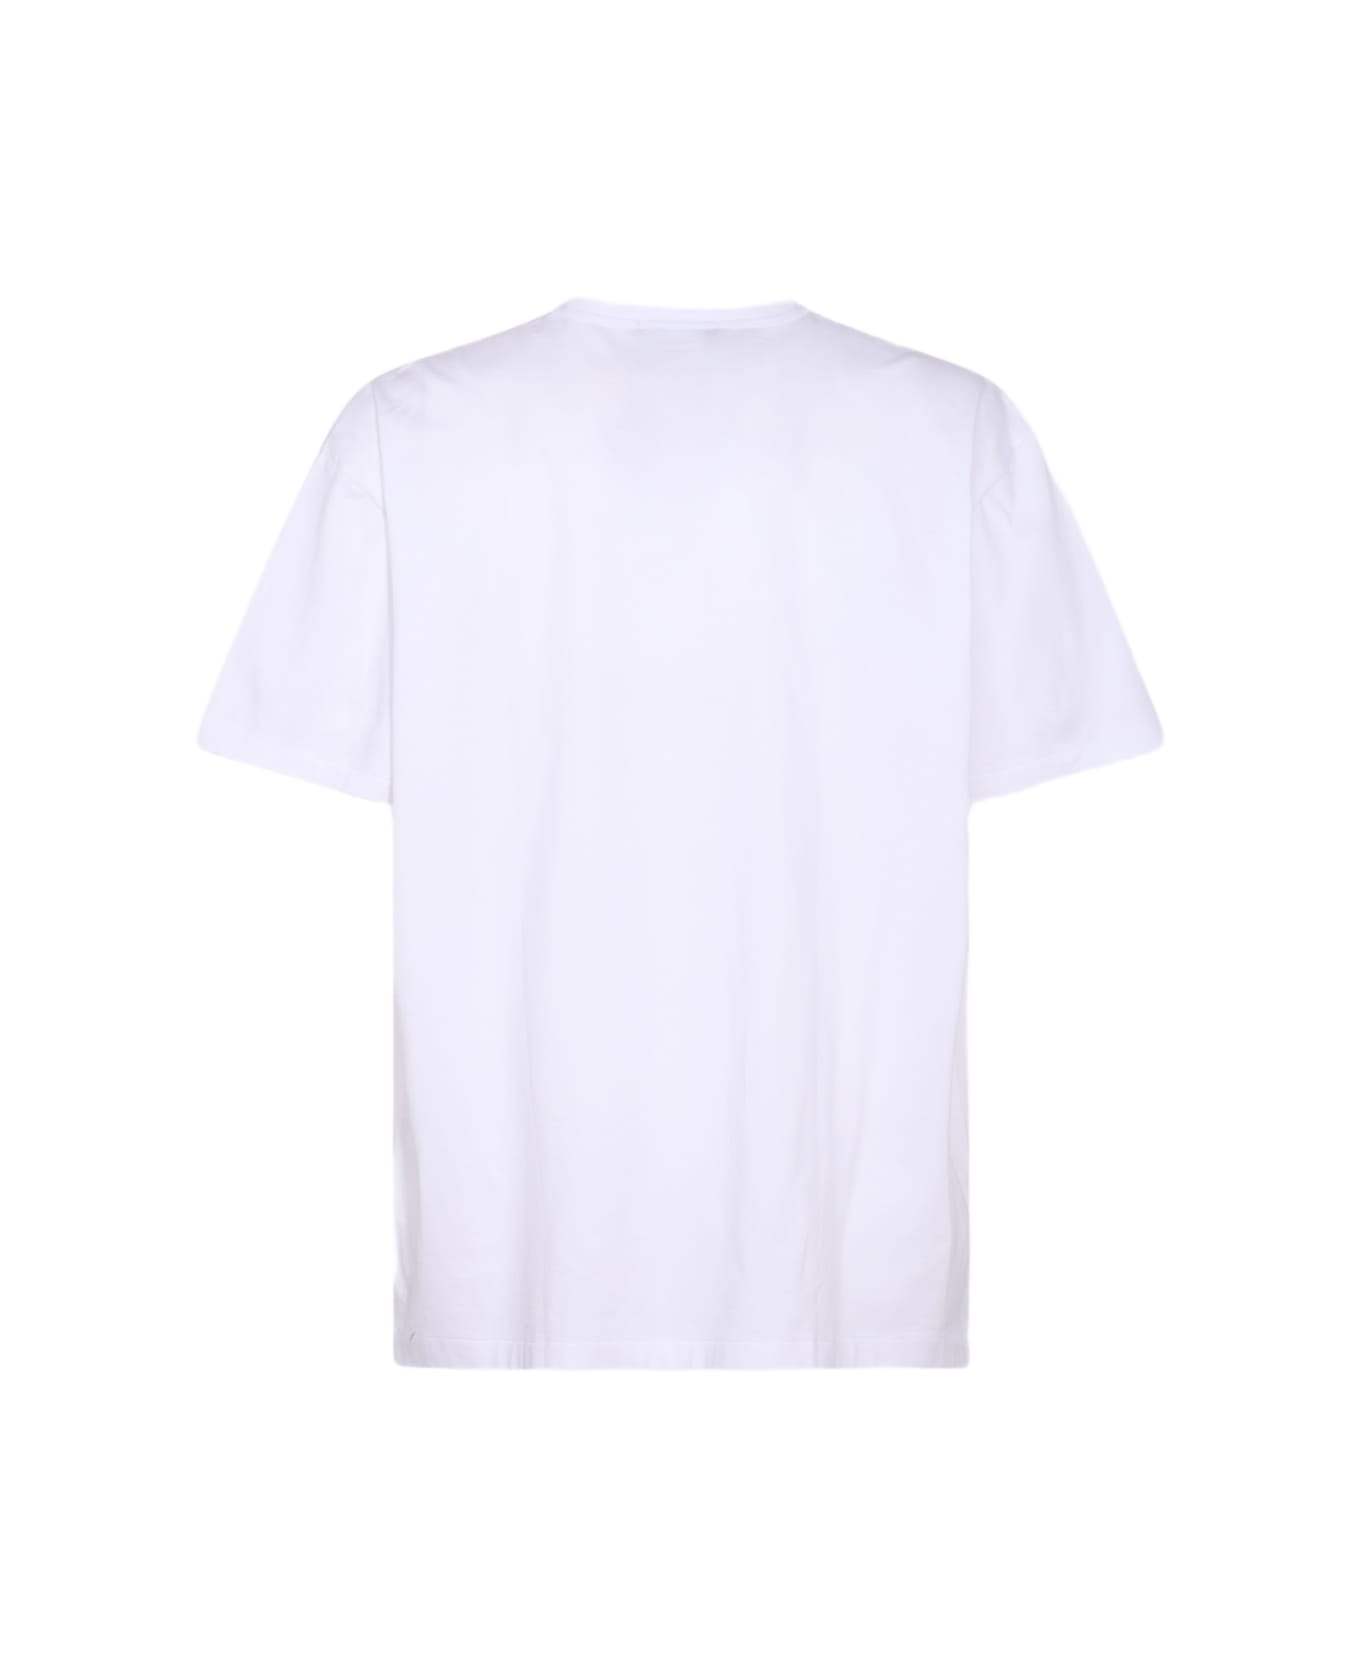 Comme Des Garçons Homme Plus White Cotton T-shirt - White